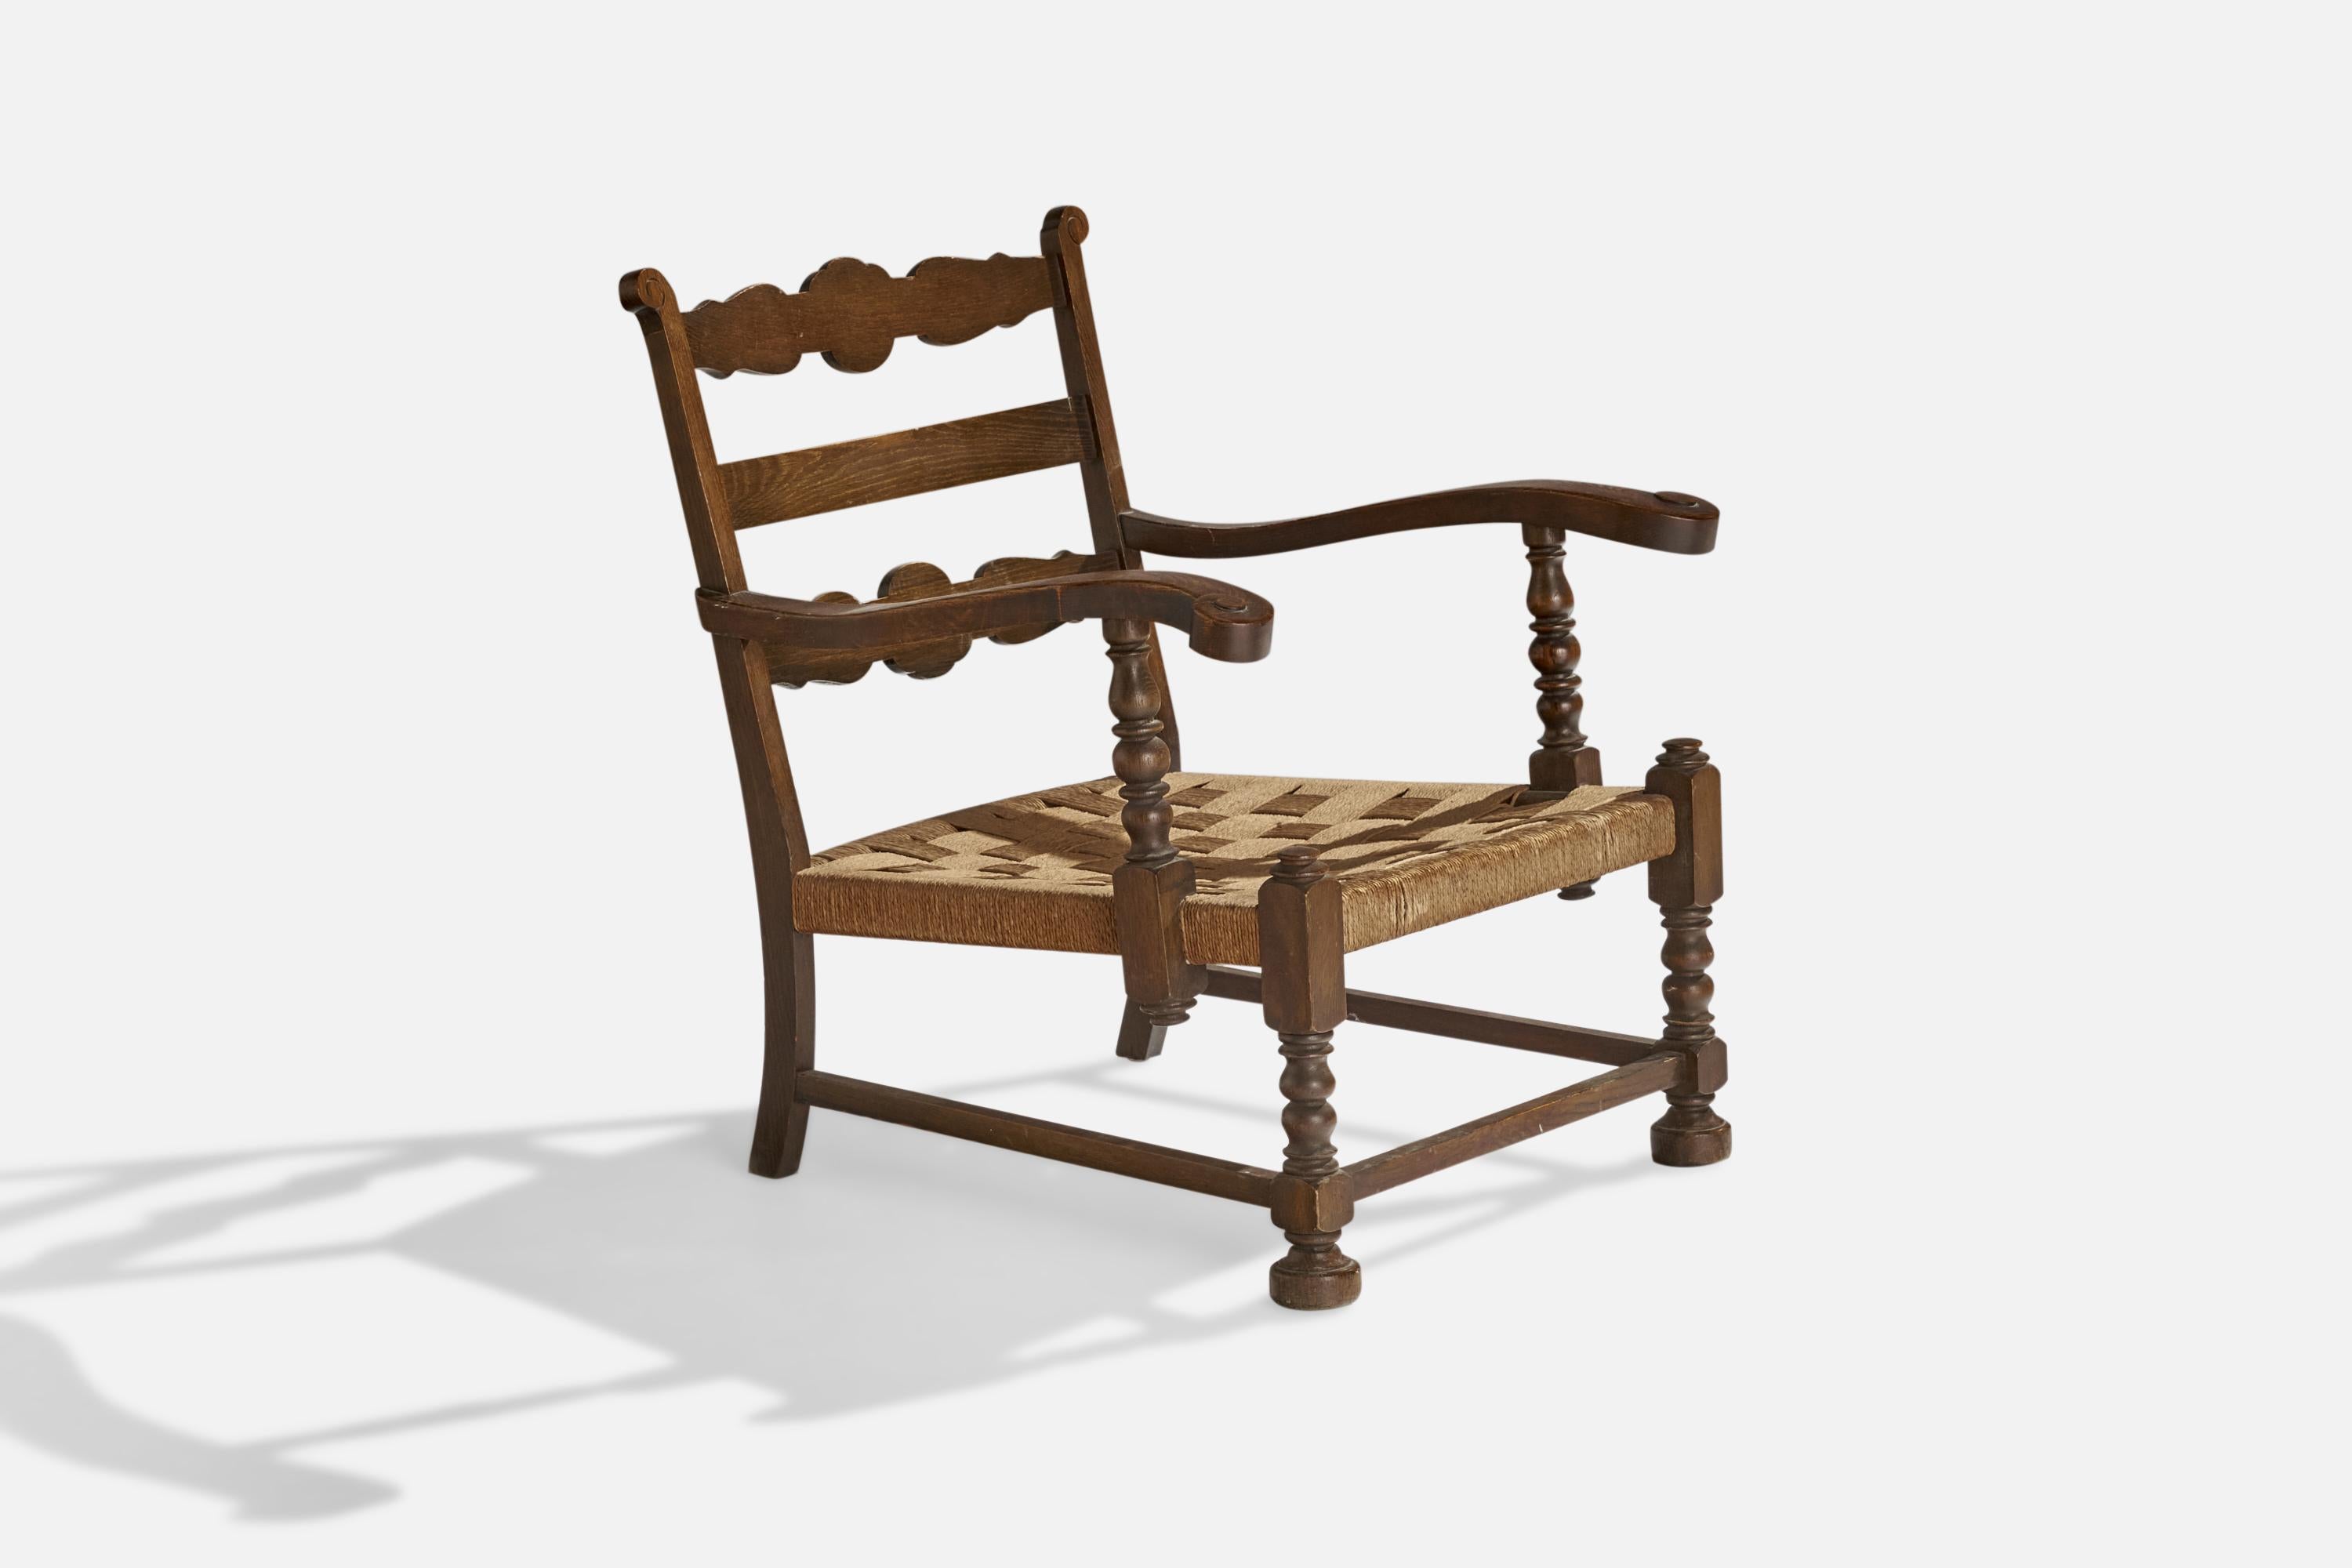 Chaises longues en chêne teinté foncé et en jonc, conçues et produites au Danemark, c.C. 1940.

hauteur de l'assise : 13